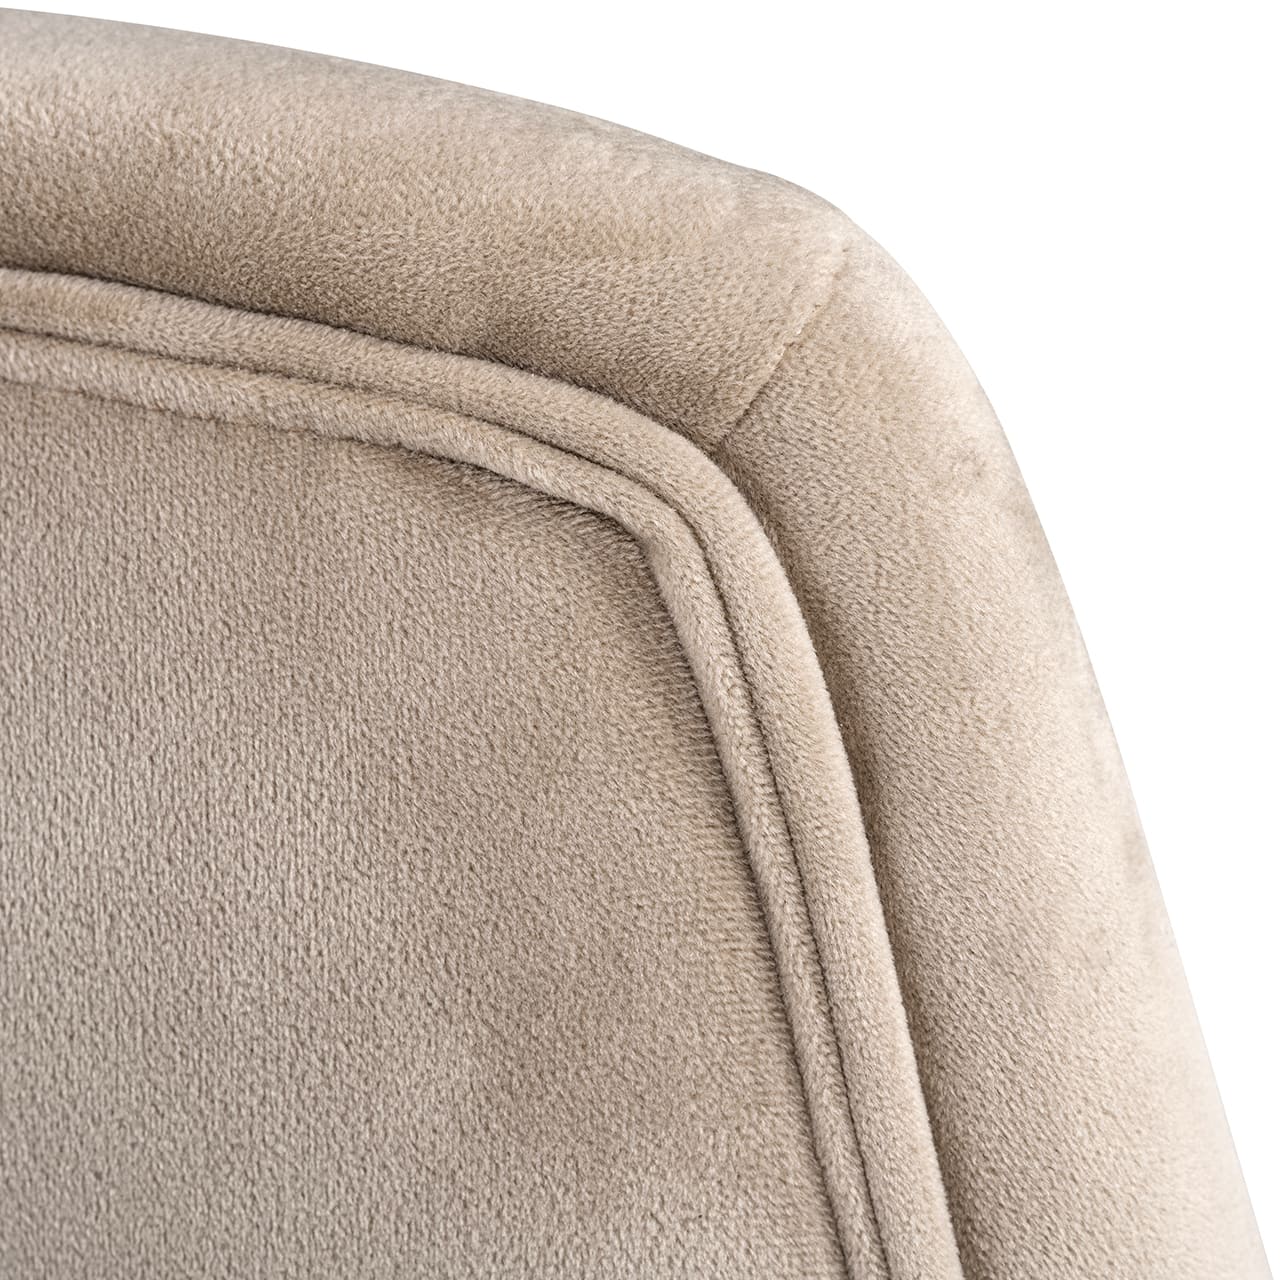 Swivel chair Nora khaki velvet (Quartz Khaki 903)